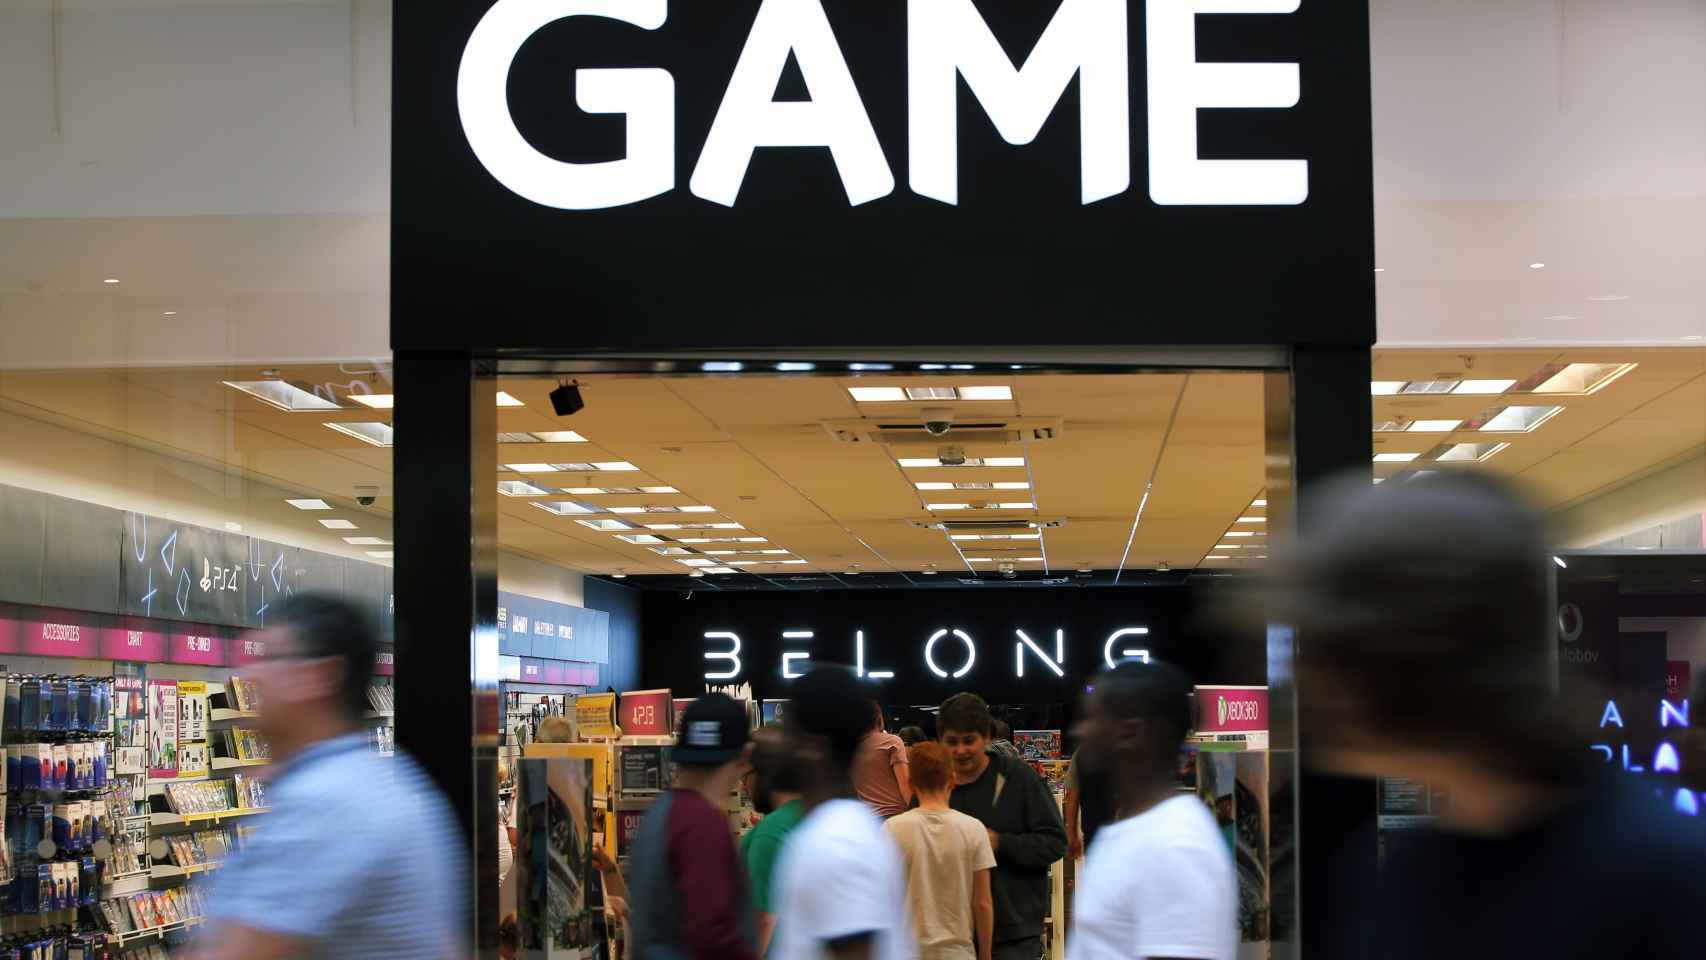 La nueva marca Belong de Game ha empezado con fuerza.